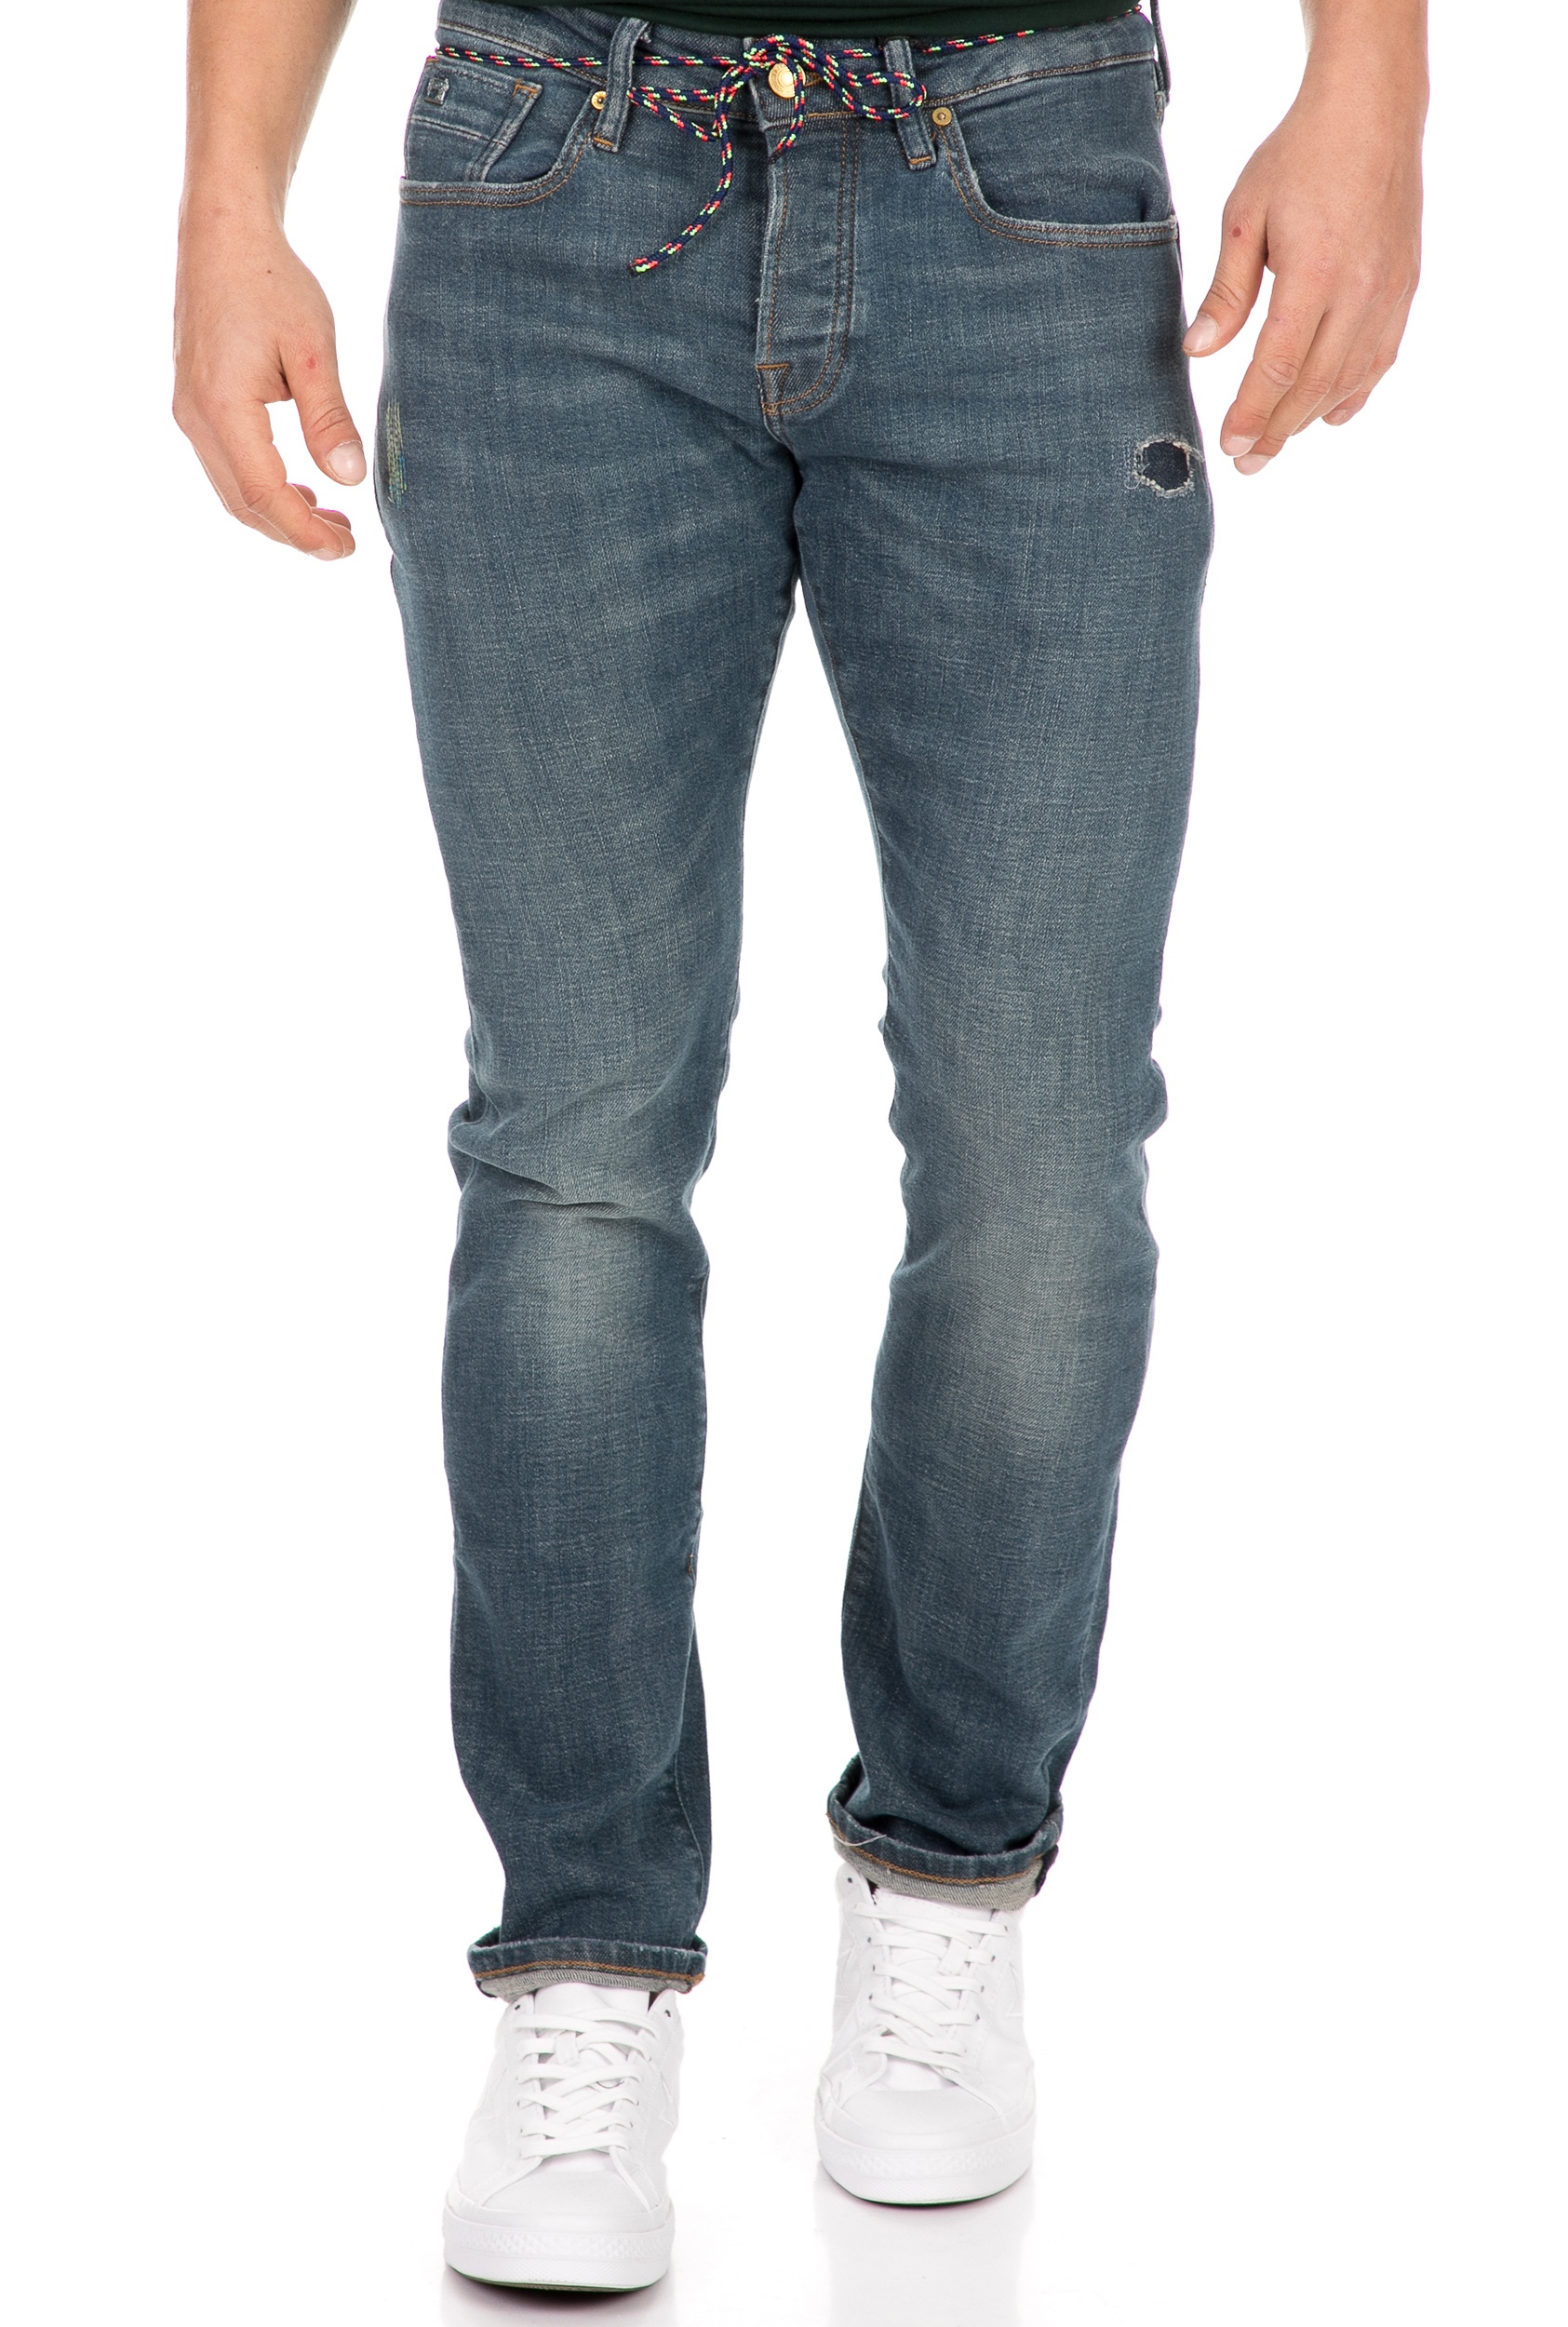 SCOTCH & SODA SCOTCH & SODA - Ανδρικό jean παντελόνι SCOTCH & SODA Ralston Plus - Brushstroke μπλε